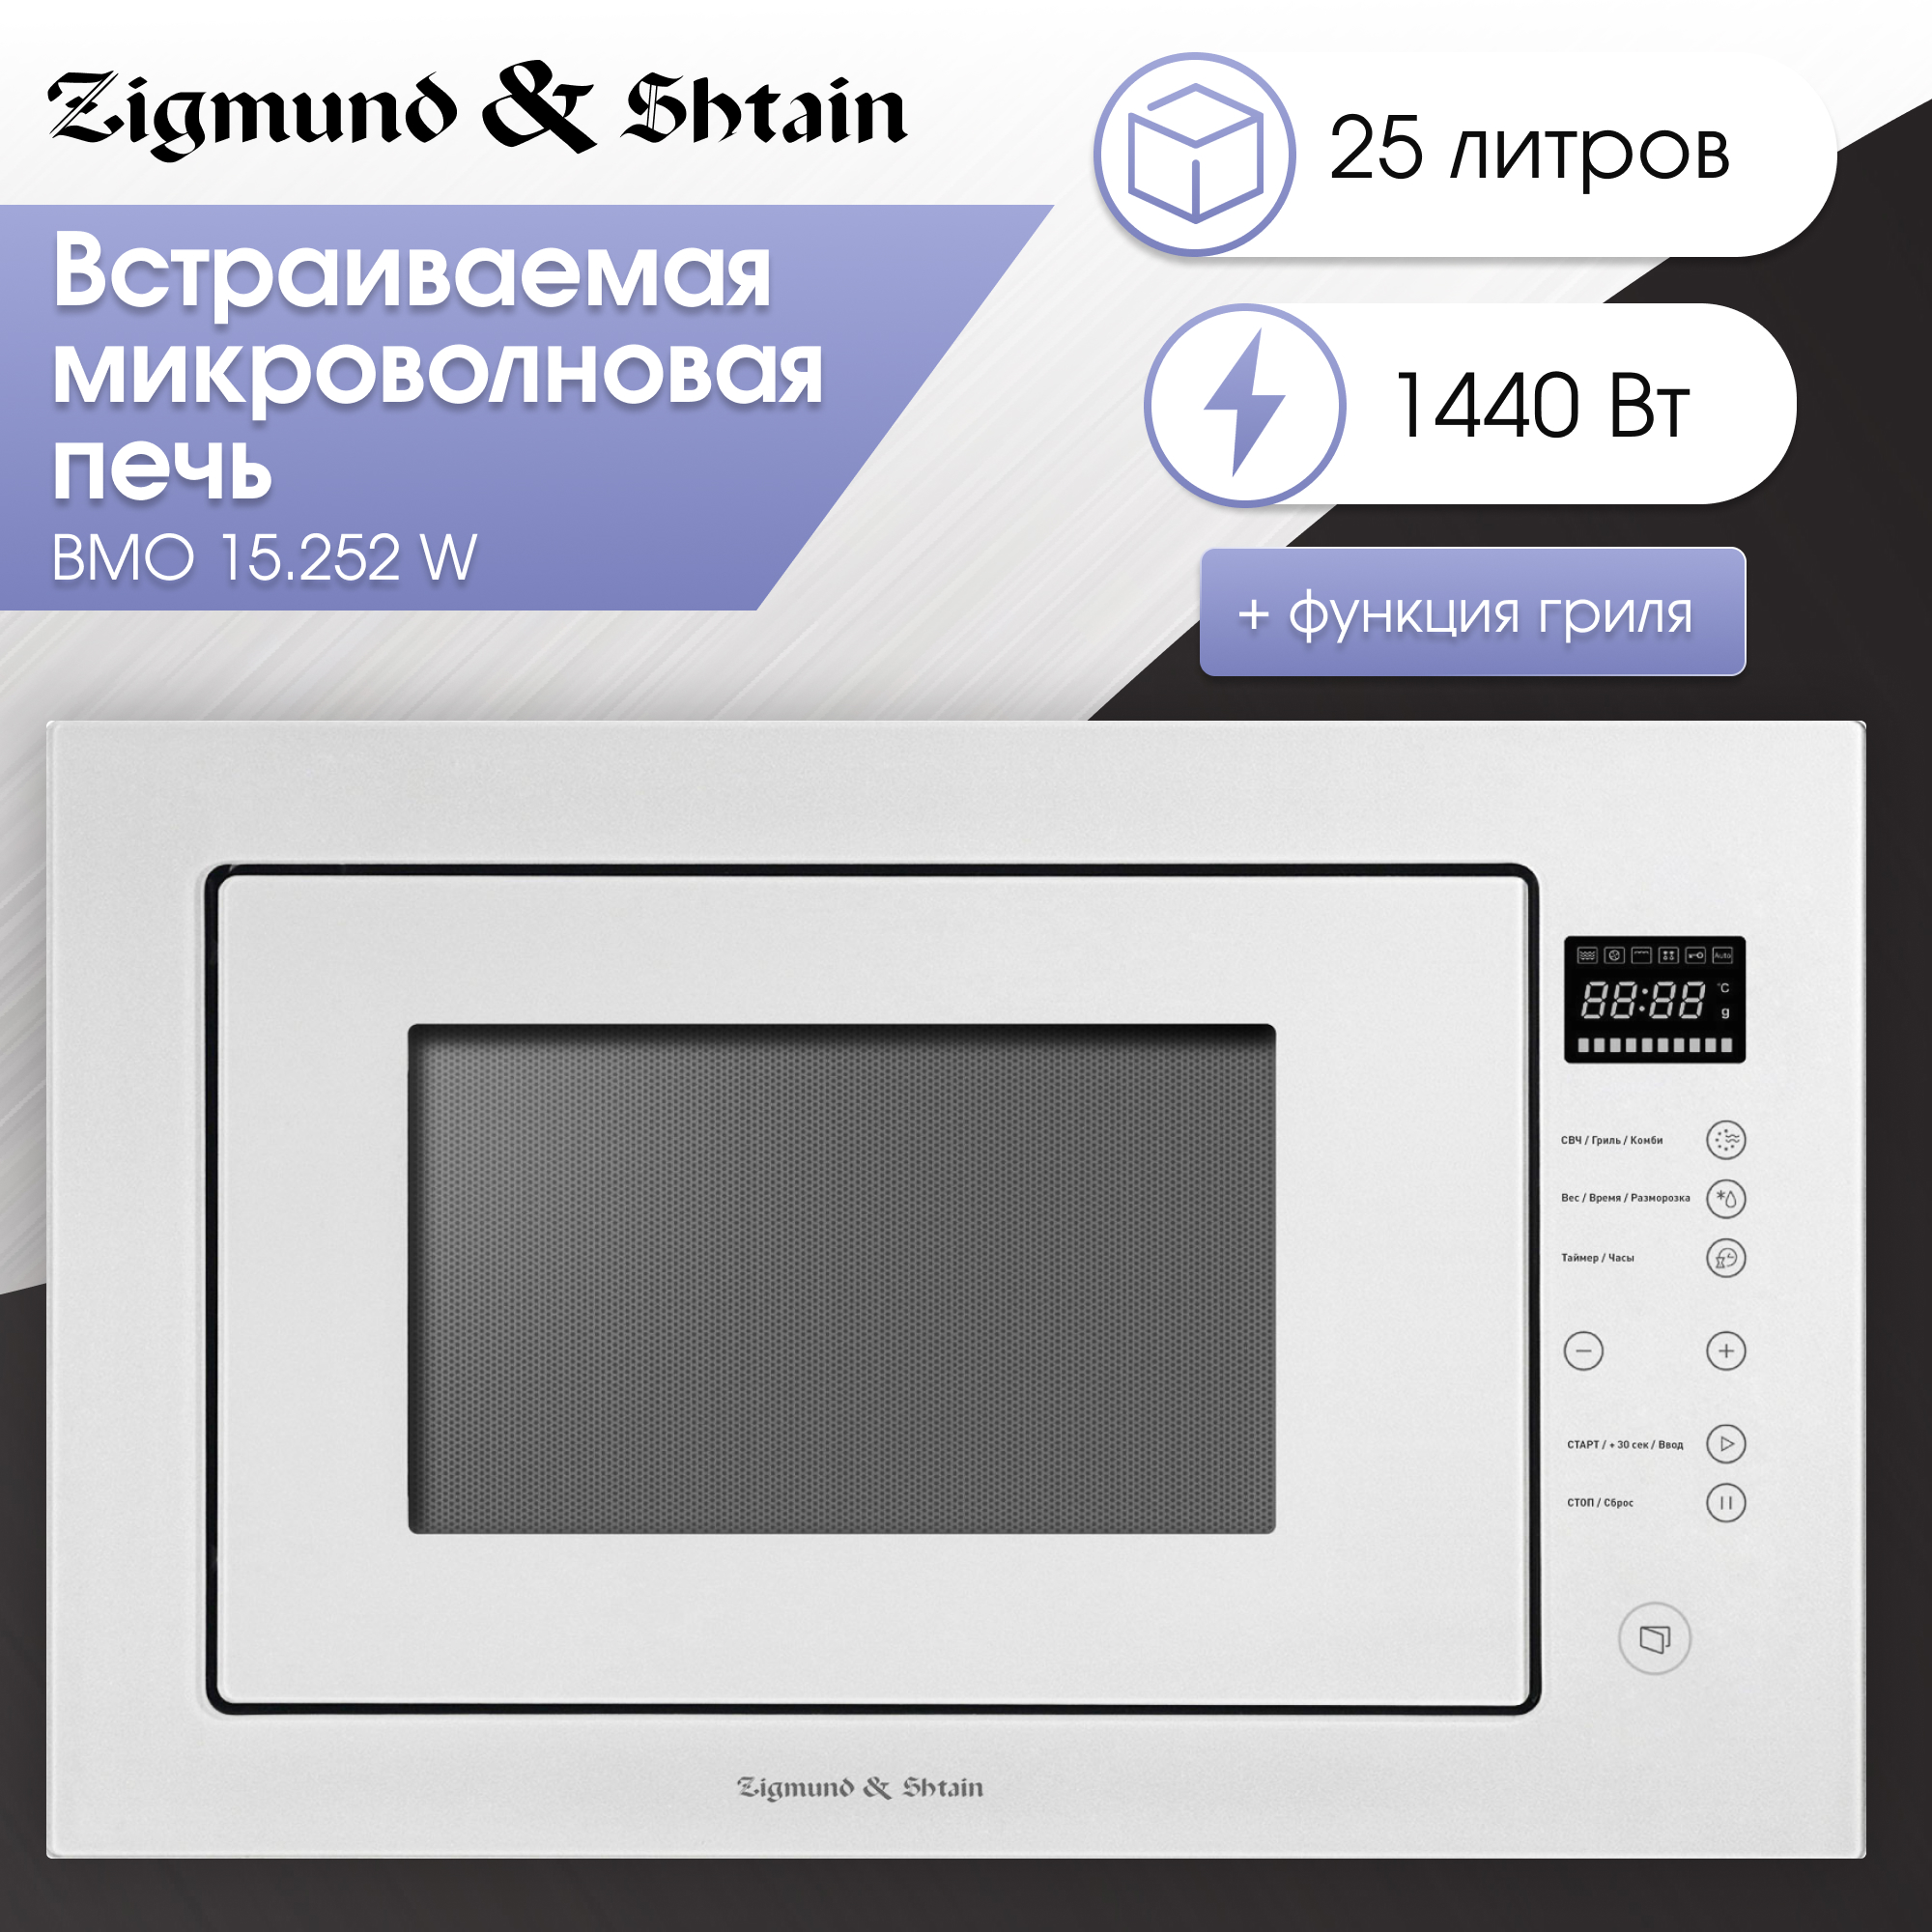 Встраиваемая микроволновая печь Zigmund & Shtain BMO 15.252 W White встраиваемая микроволновая печь hansa ammb25e1wh white